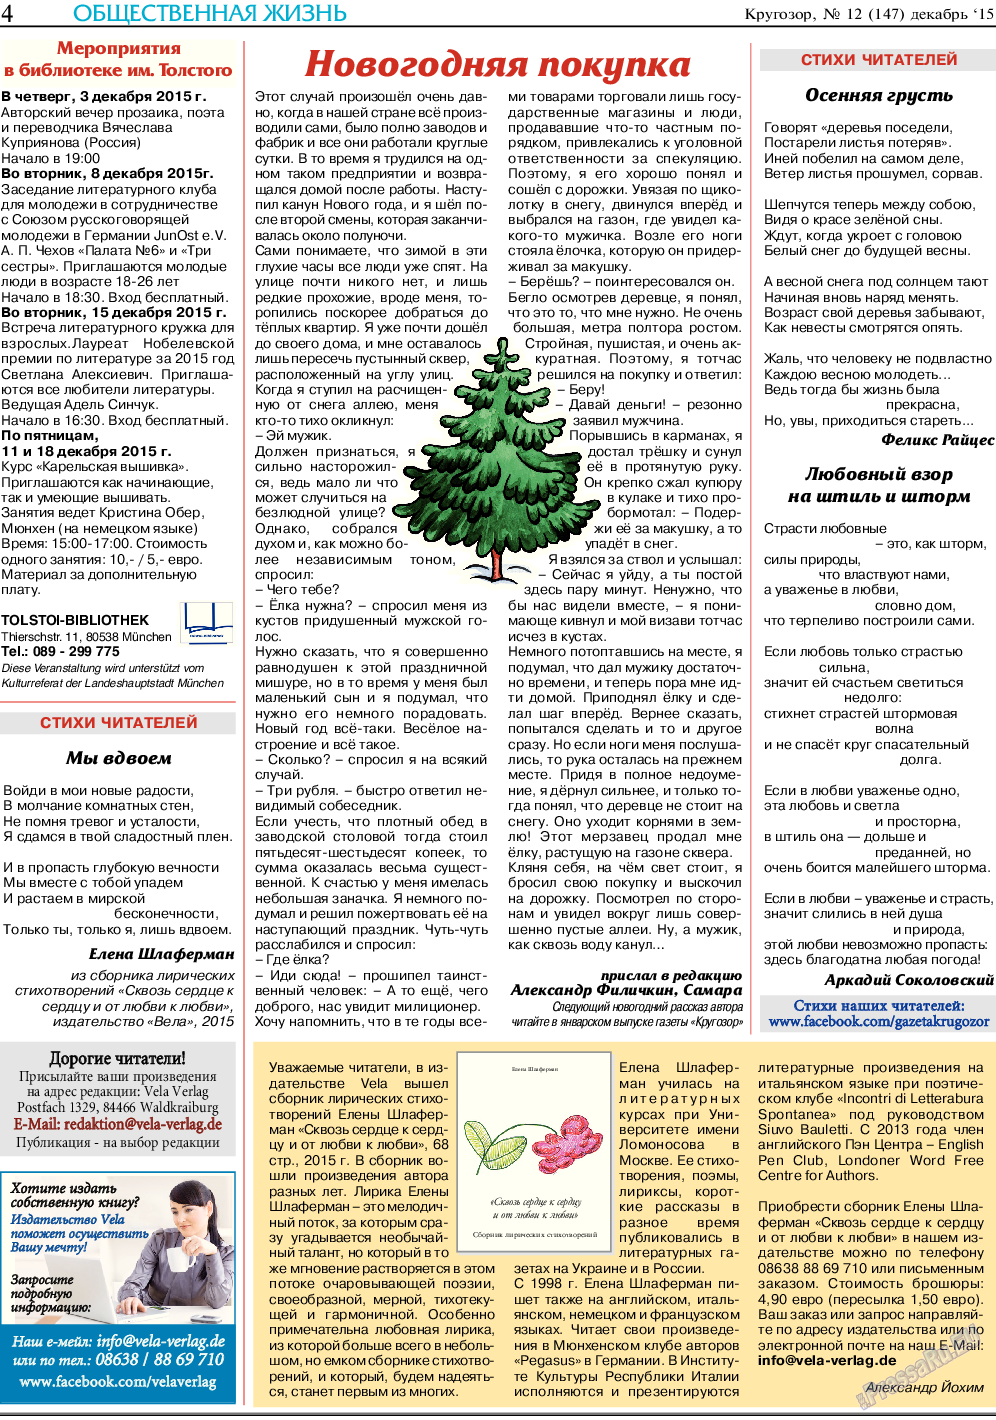 Кругозор, газета. 2015 №12 стр.4